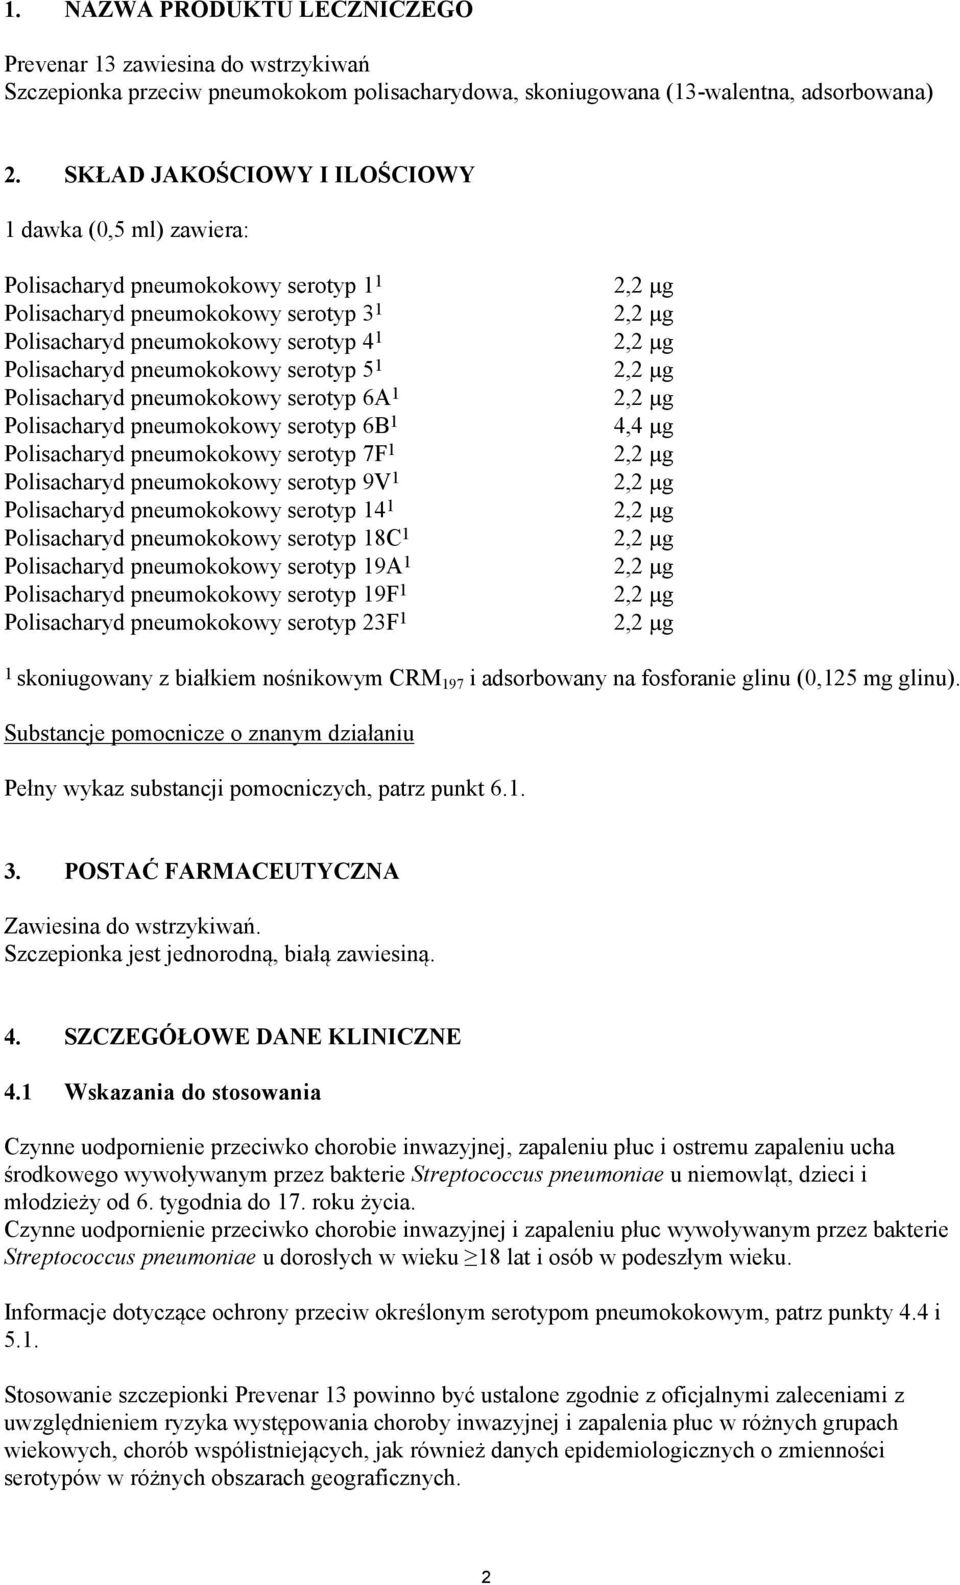 Polisacharyd pneumokokowy serotyp 5 1 2,2 µg Polisacharyd pneumokokowy serotyp 6A 1 2,2 µg Polisacharyd pneumokokowy serotyp 6B 1 4,4 µg Polisacharyd pneumokokowy serotyp 7F 1 2,2 µg Polisacharyd